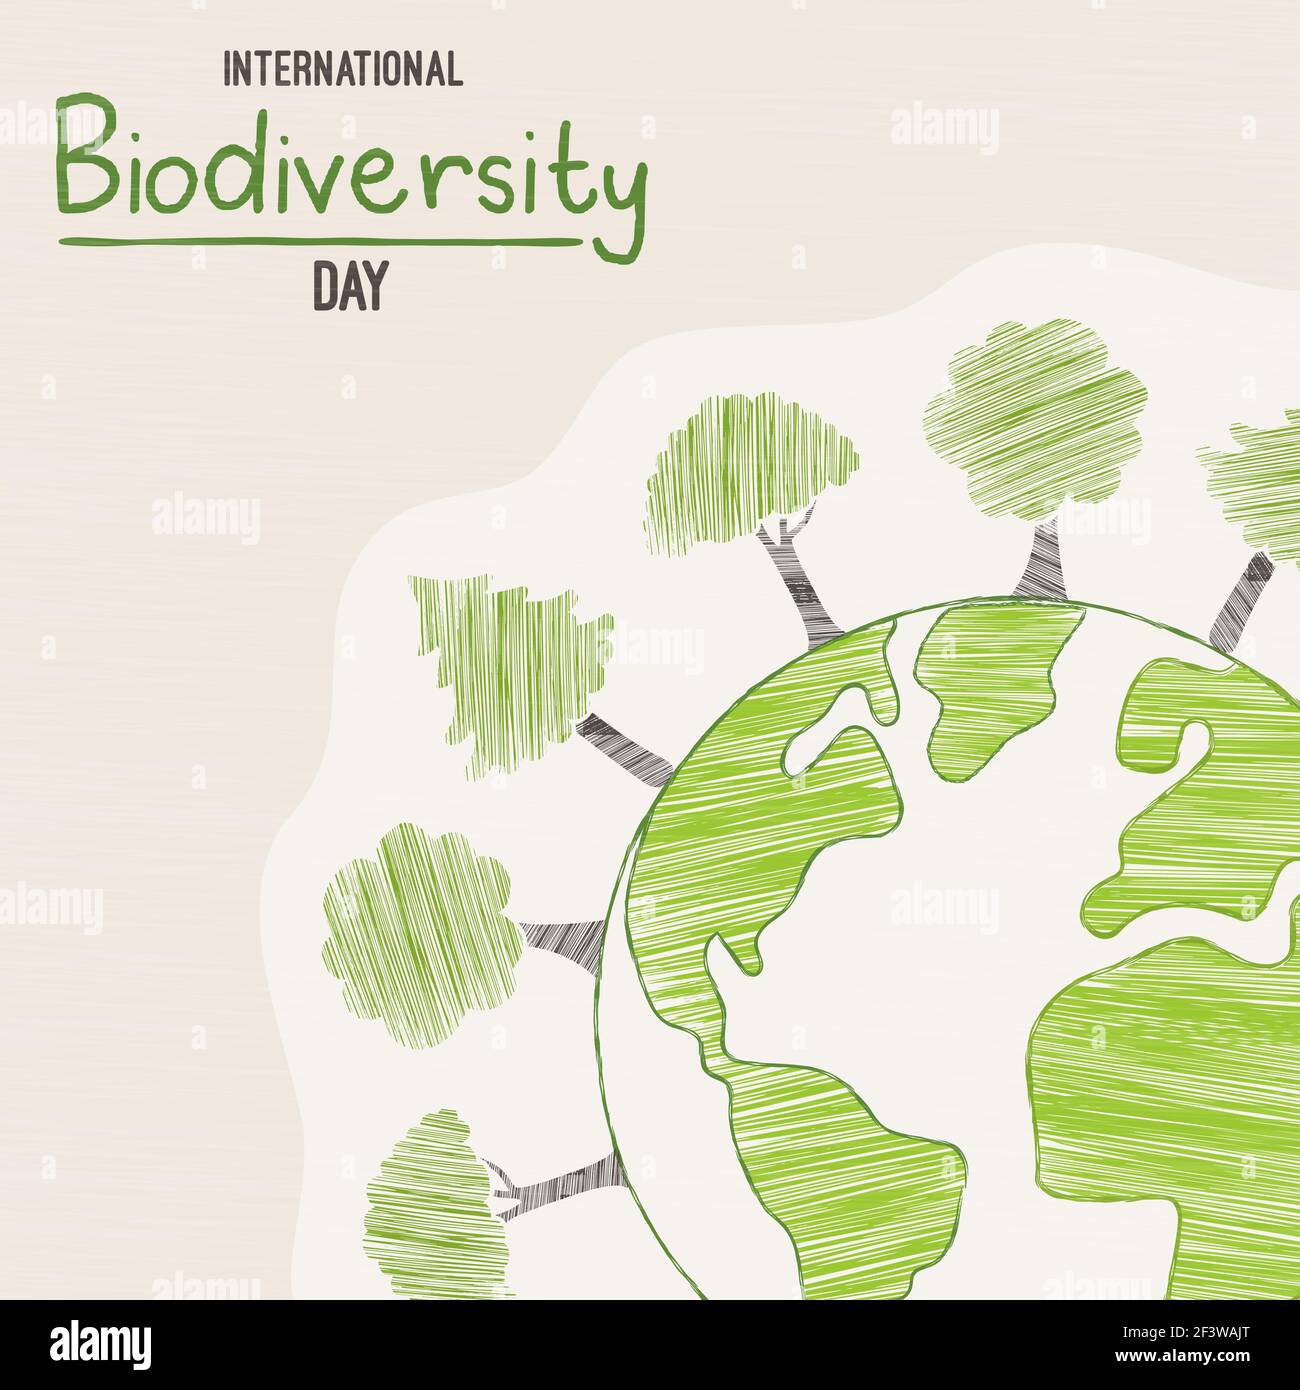 Internationaler Tag der Biodiversität Grußkarte Illustration des grünen Planeten Erde mit handgezeichneten Baumkritzeln. Veranstaltung zur Sensibilisierung der Natur am 22. Mai. Stock Vektor